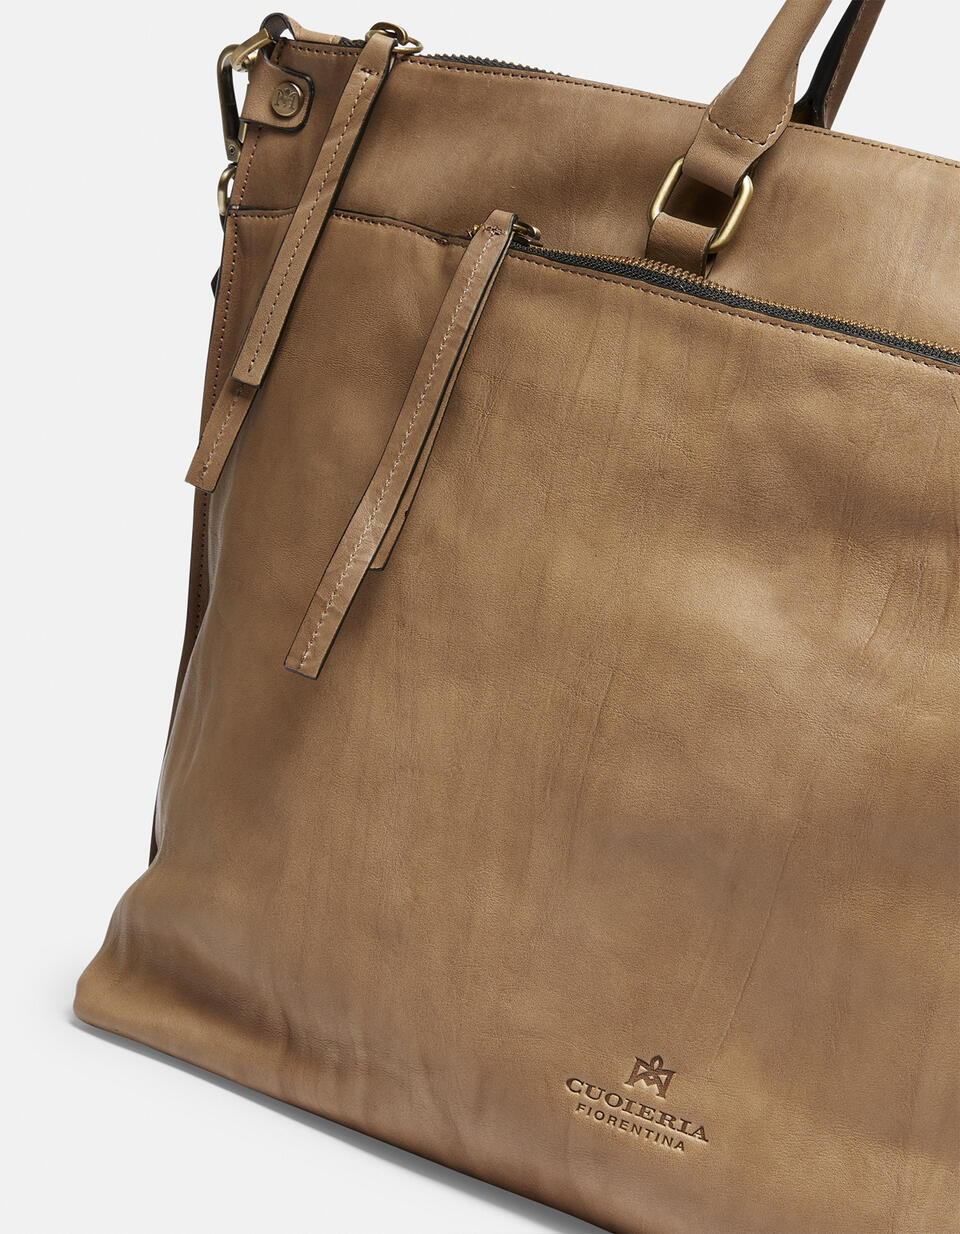 Safari Maxi tote bag in Delavé calfskin - TOTE BAG - WOMEN'S BAGS | bags Mimì TAUPE - TOTE BAG - WOMEN'S BAGS | bagsCuoieria Fiorentina